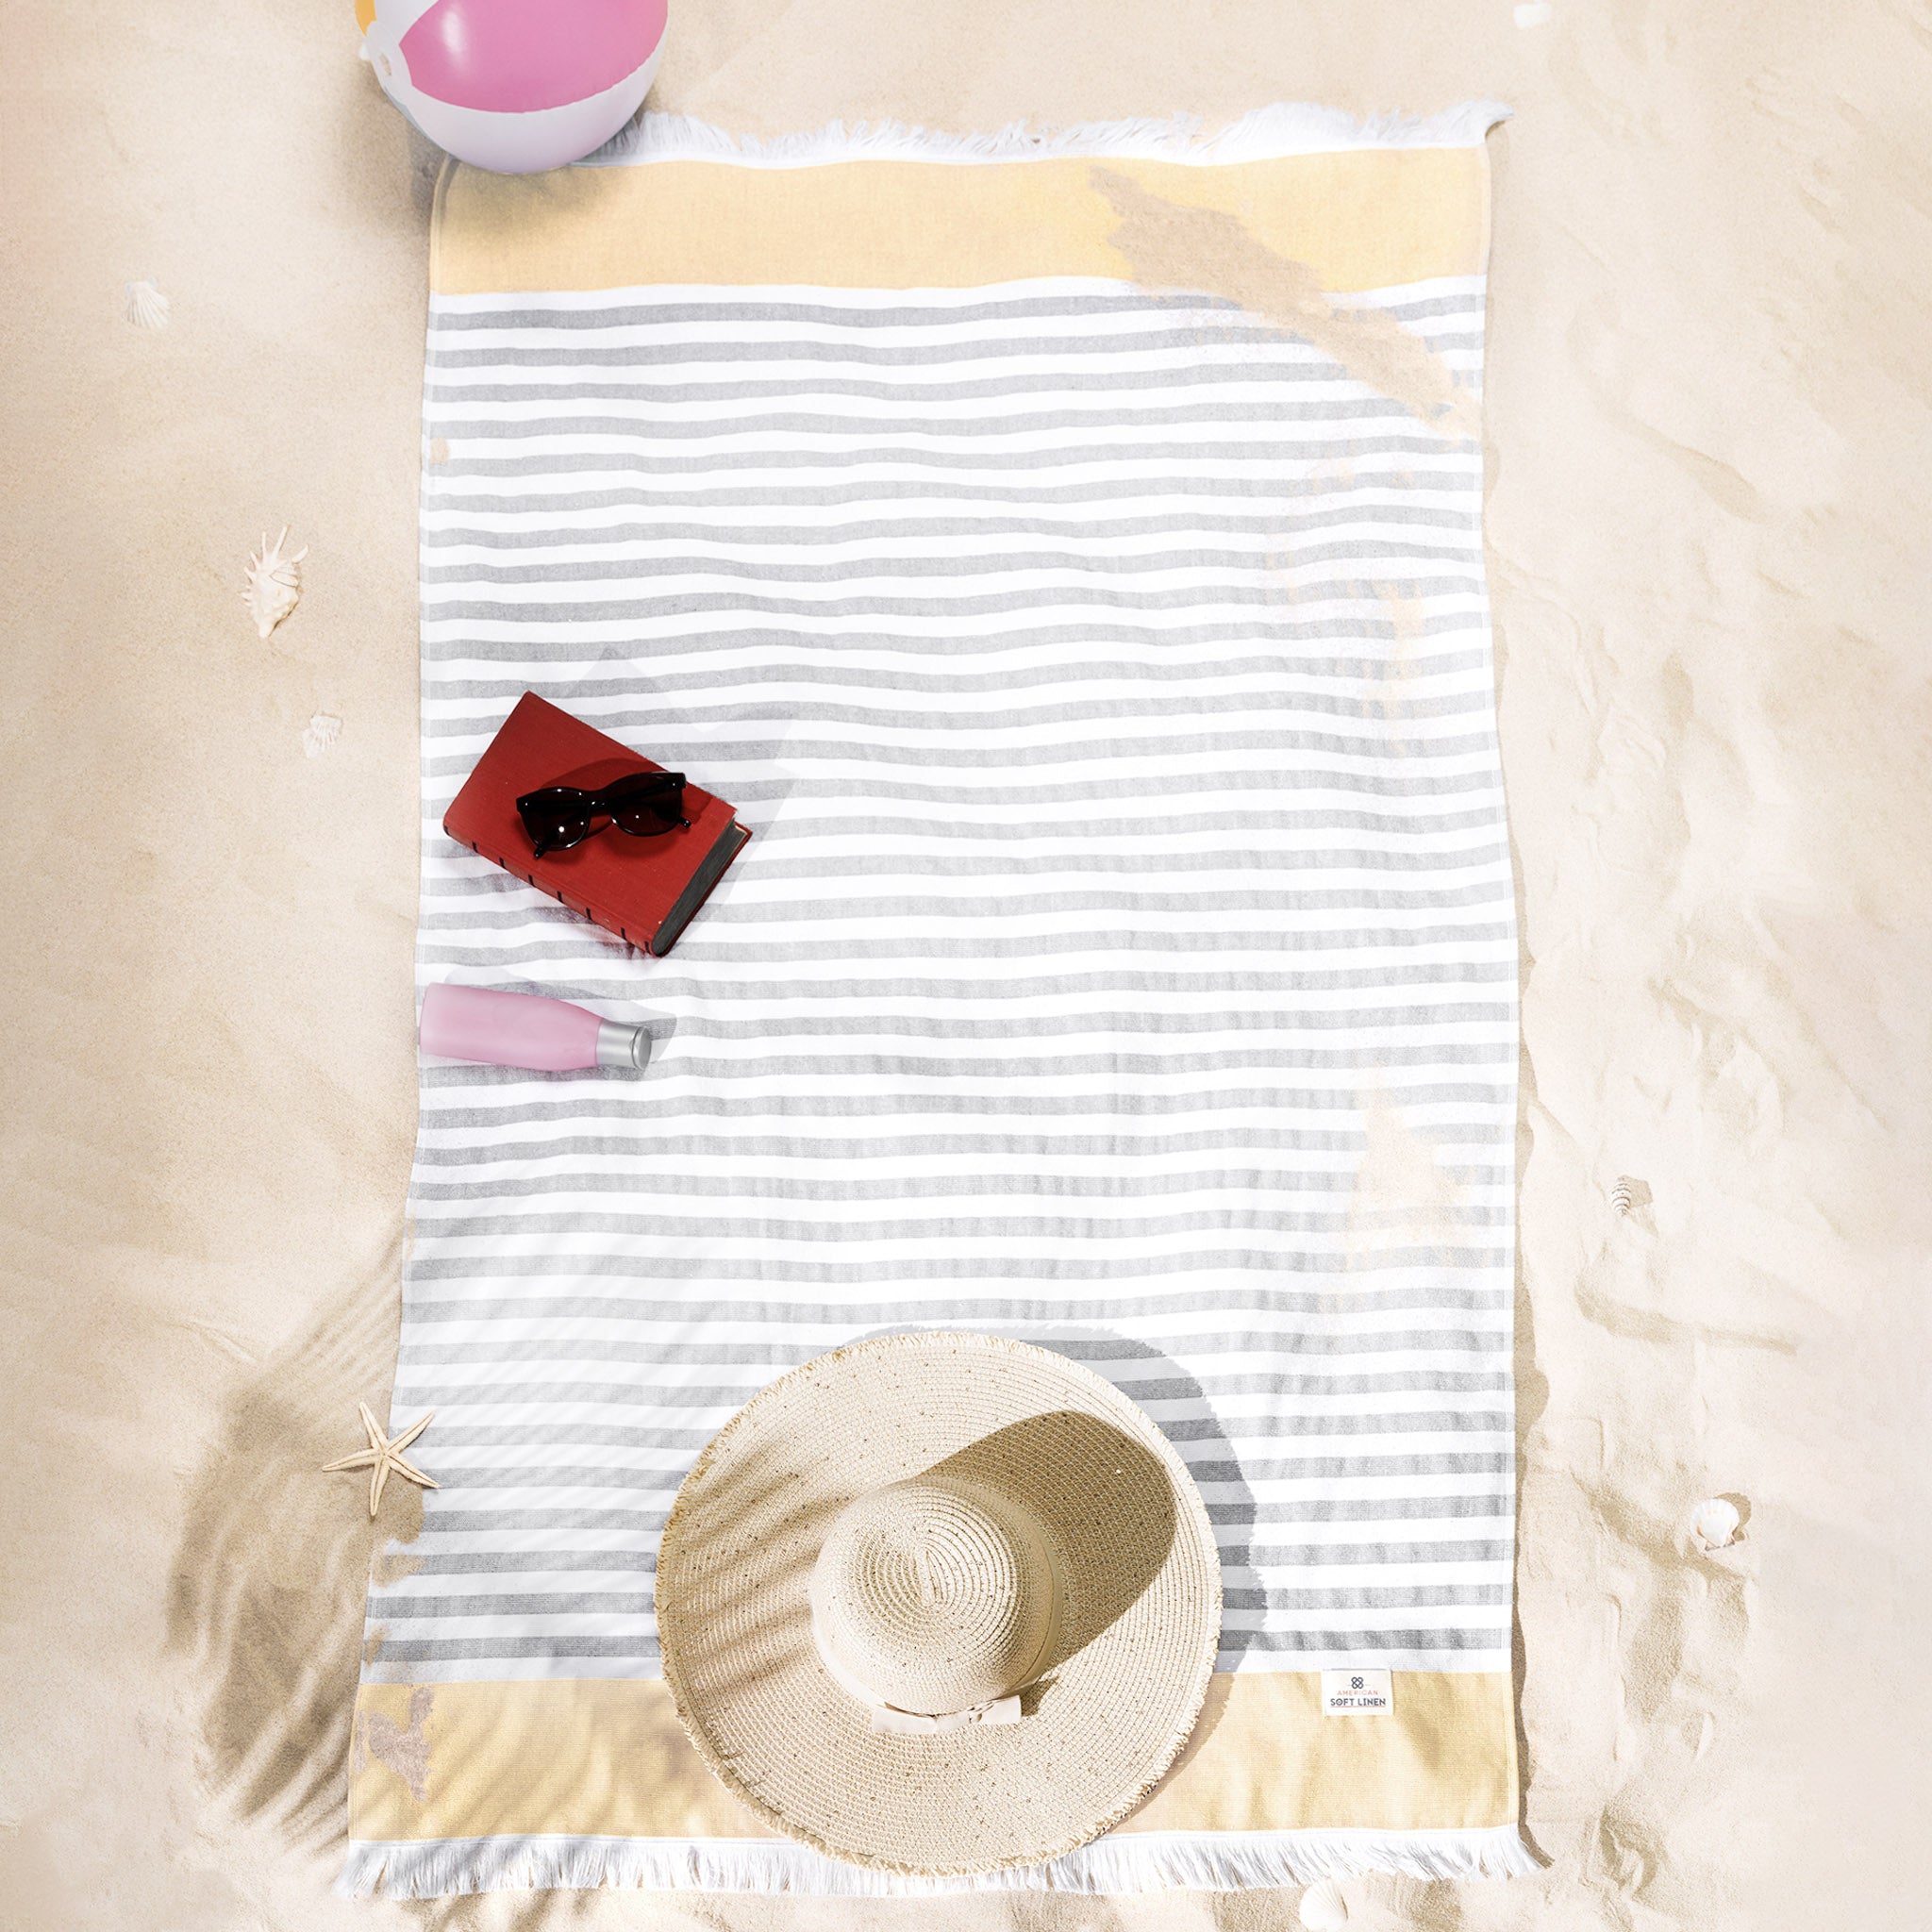 4 Packed 100% Cotton Terry Peshtemal & Beach Towel Yellow-06